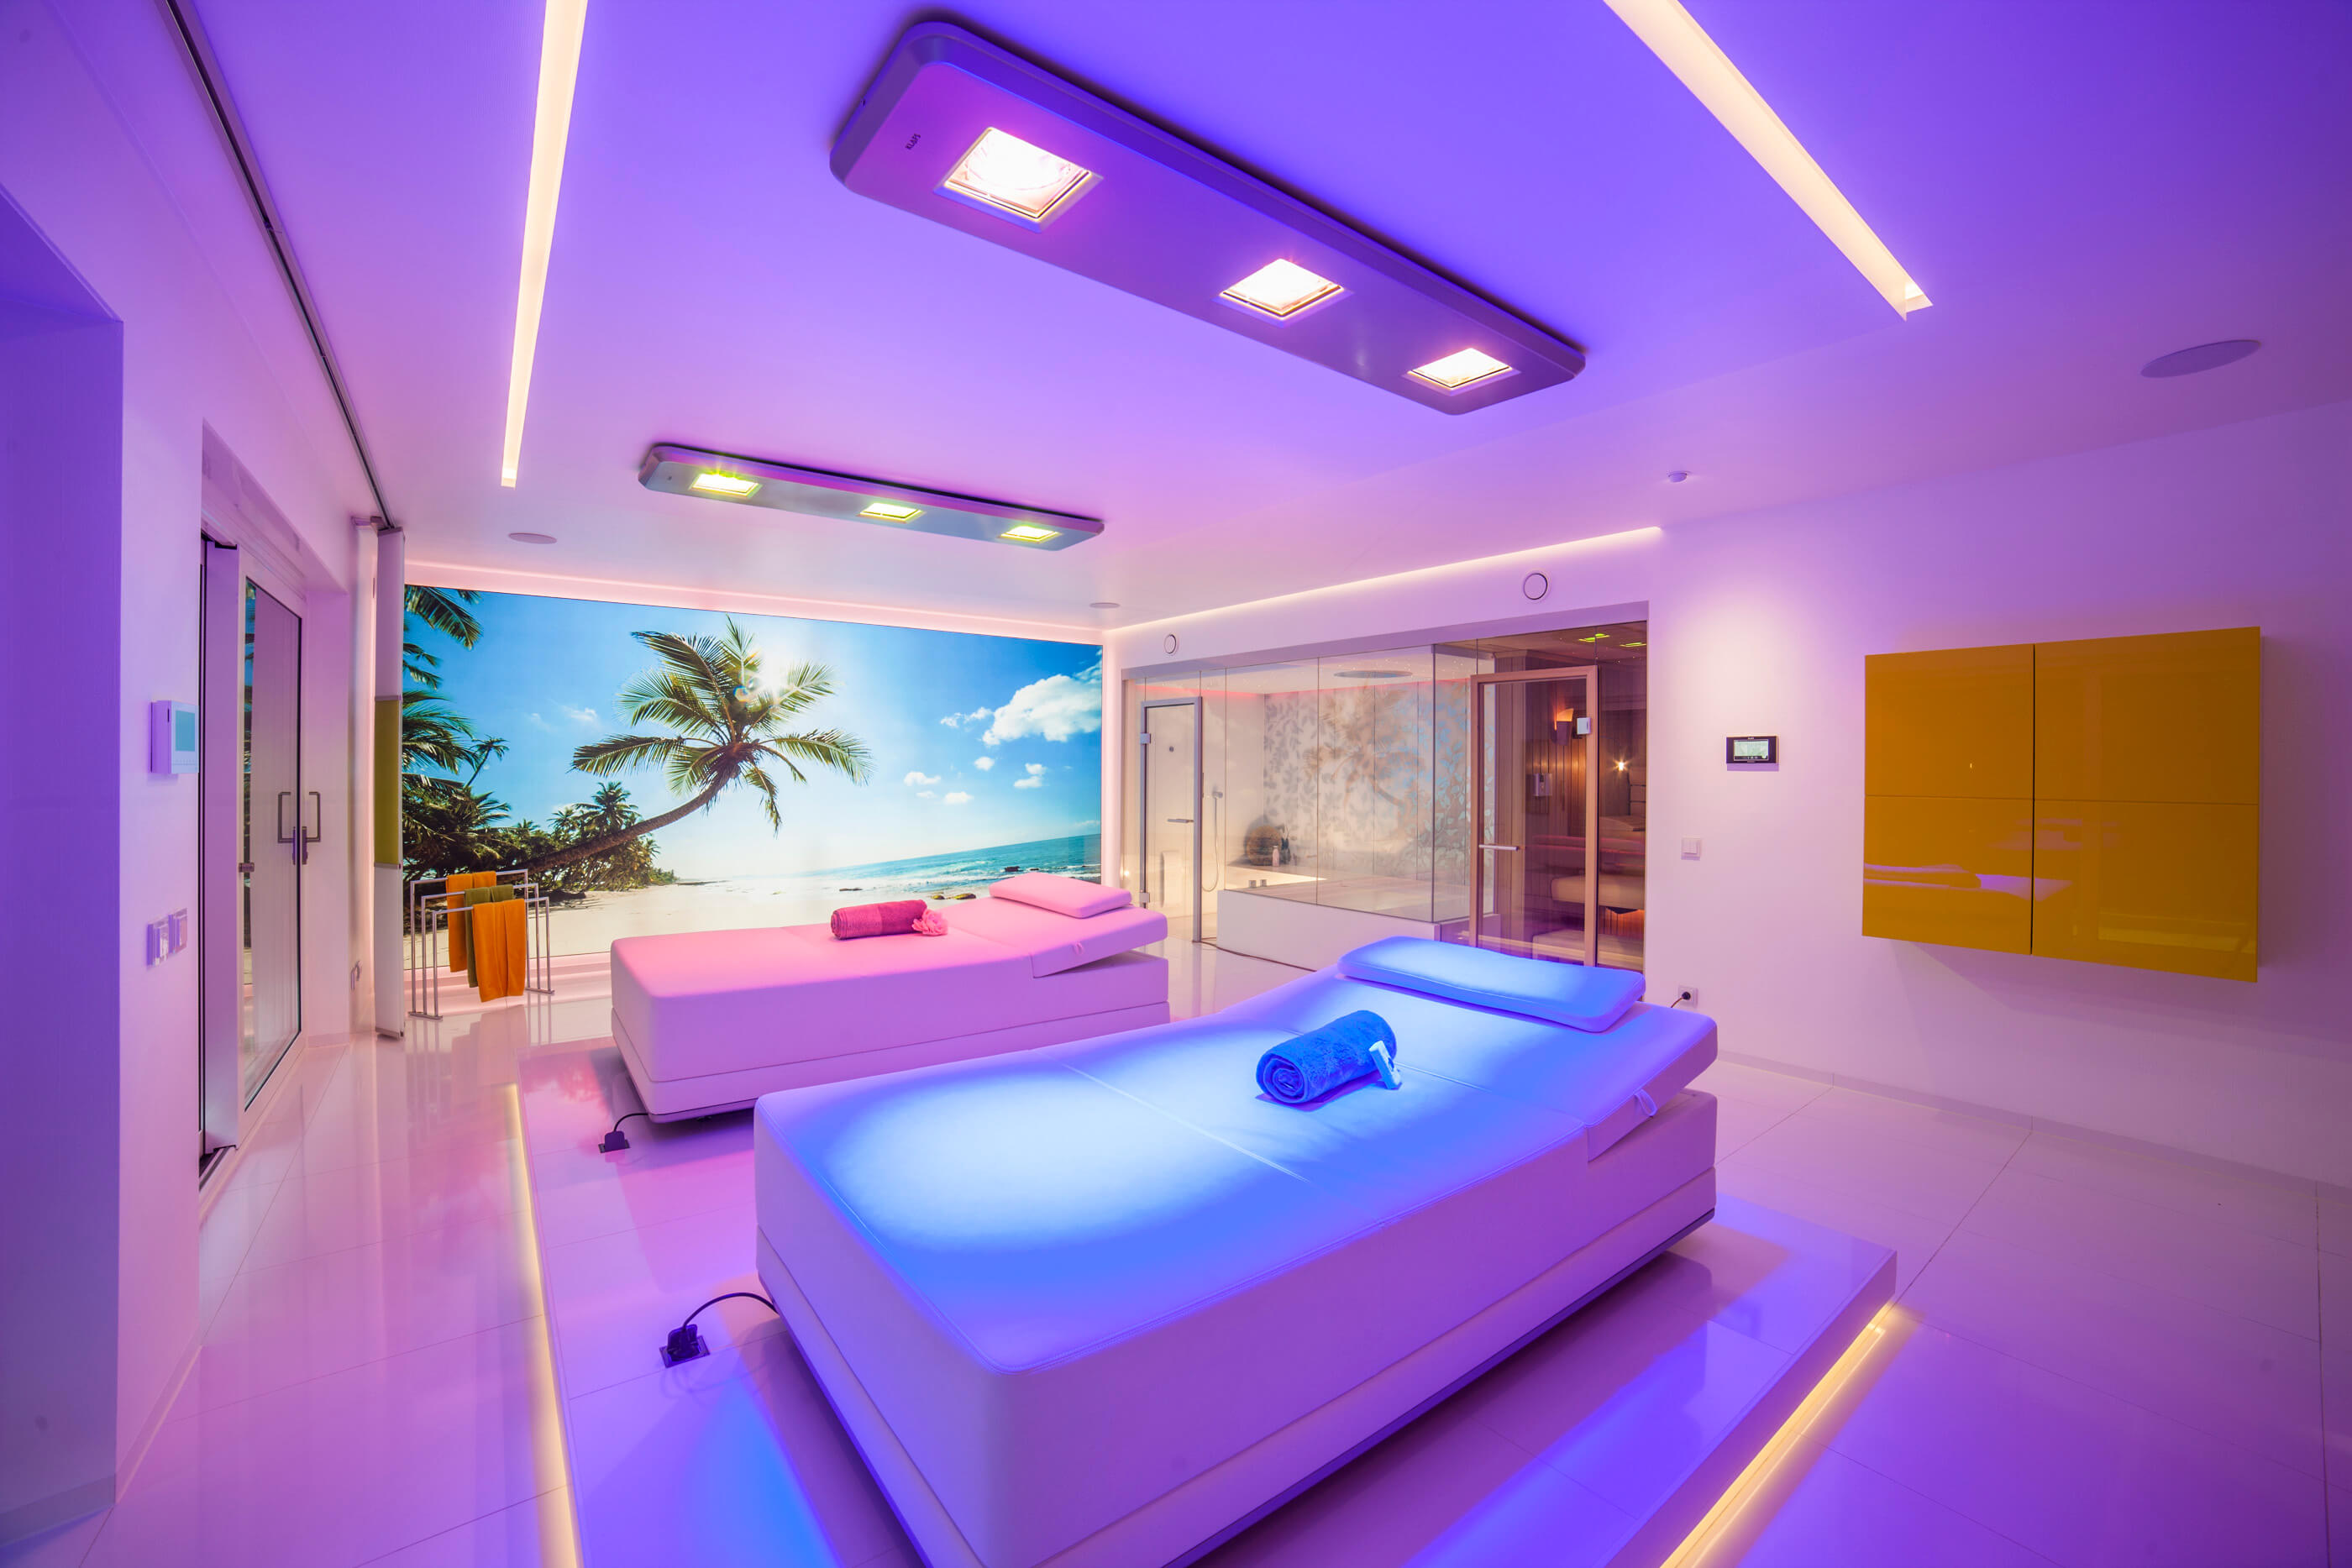 Luxuriöses Private Spa-Design: Exklusives Wellness-Erlebnis in den eigenen vier Wänden